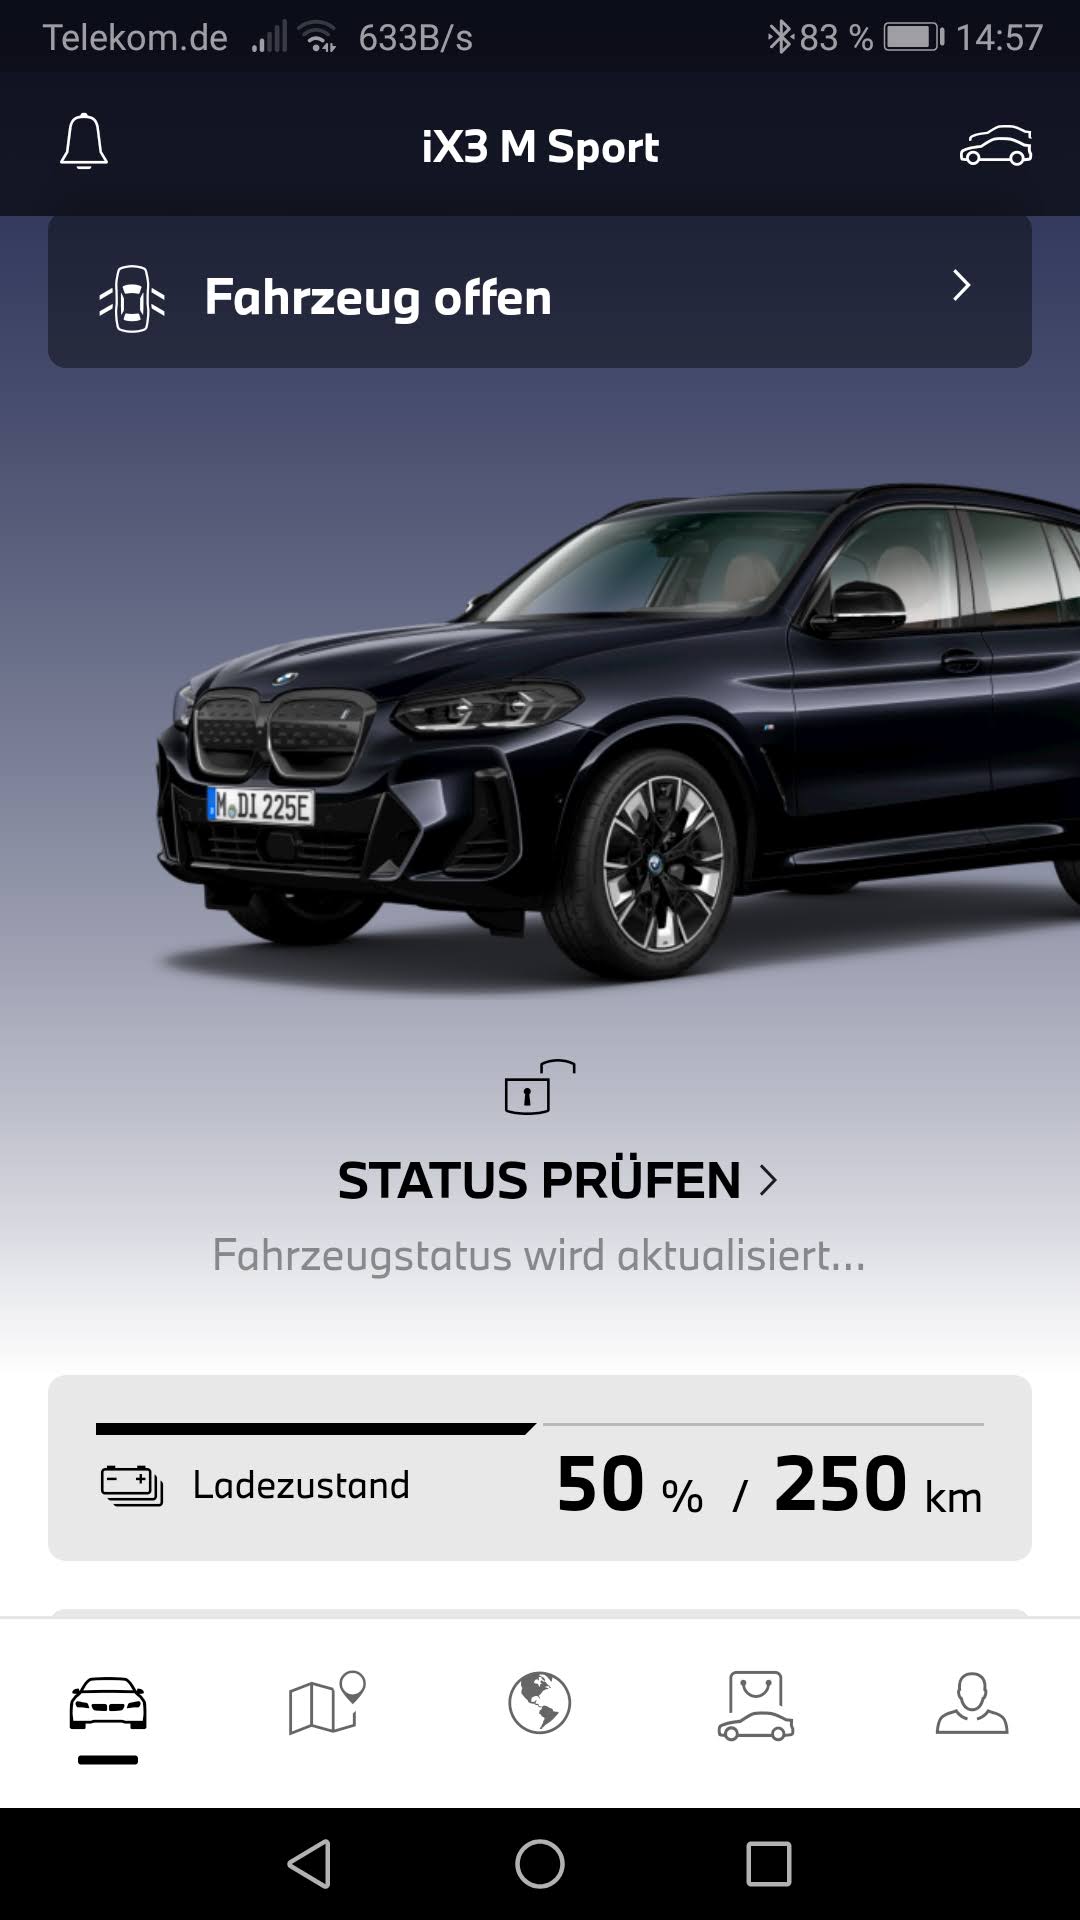 BMW iX3 50% geladen mit 250 km Reichweite, Reichweite elektrischer SUV von BMW, SUV kommt mit halber Ladung 250 km weit,